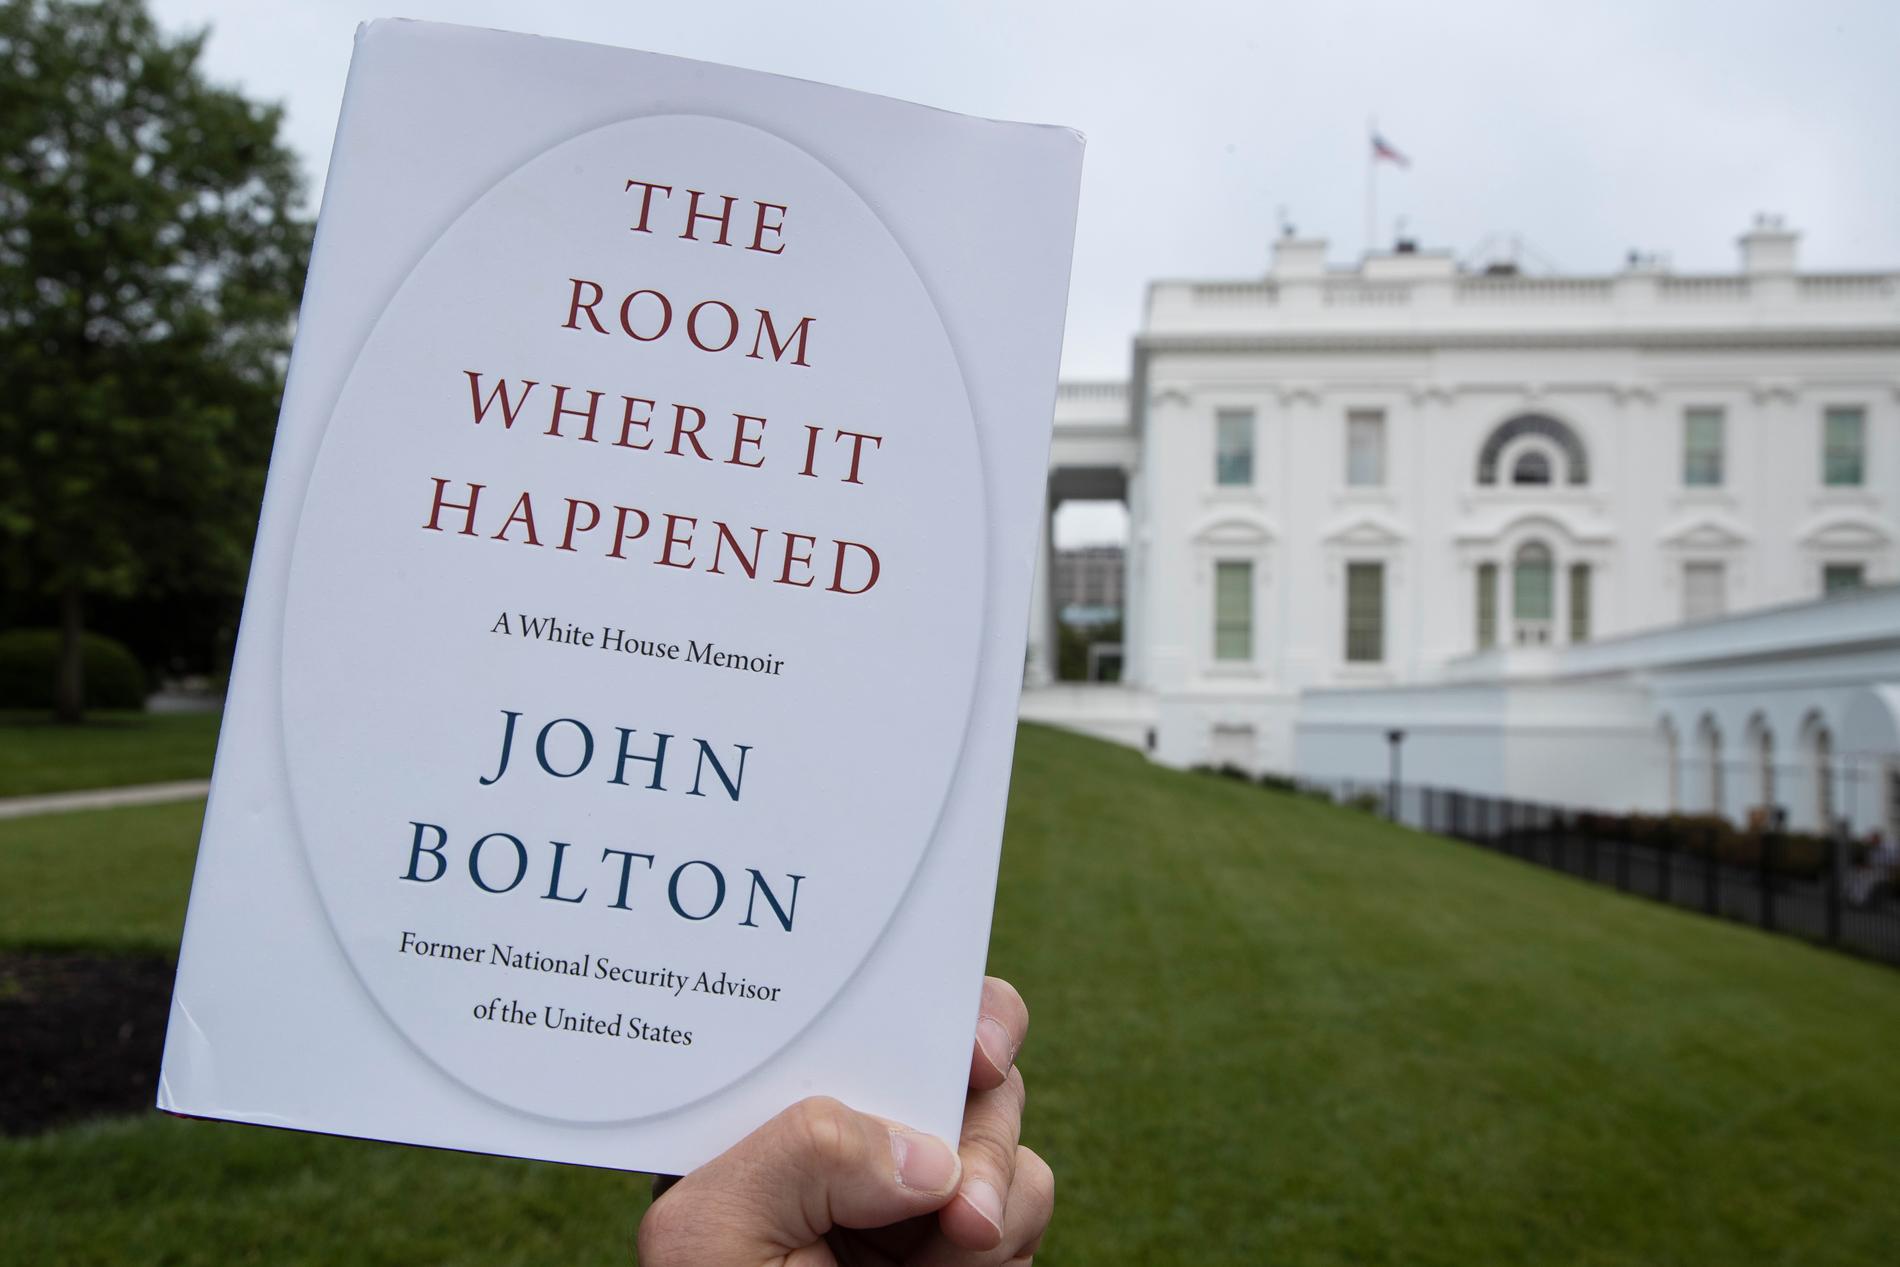 Boken ”The room where it happened: a White House memoir”.